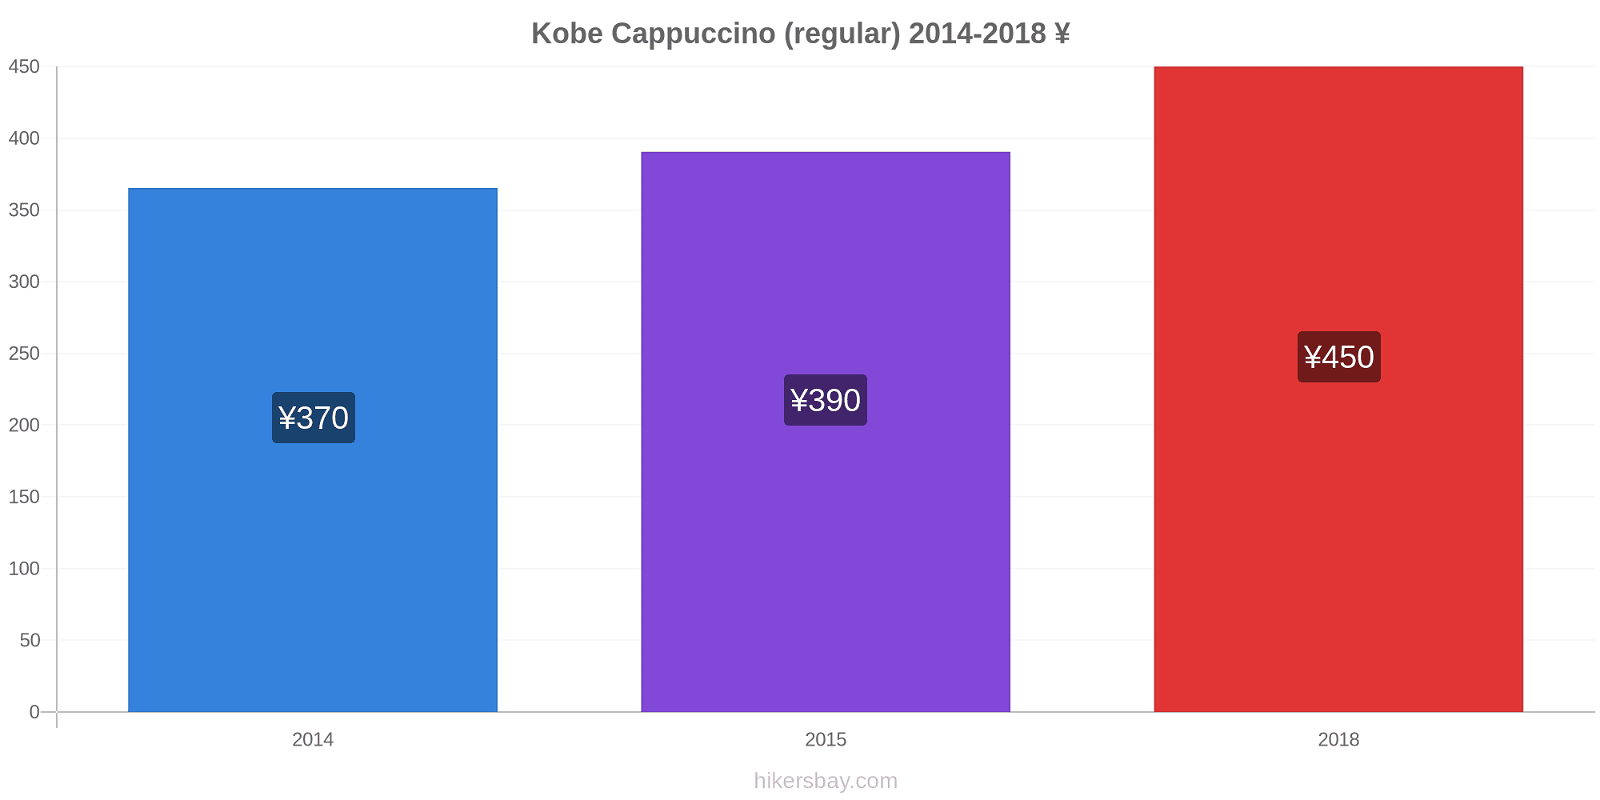 Kobe price changes Cappuccino (regular) hikersbay.com